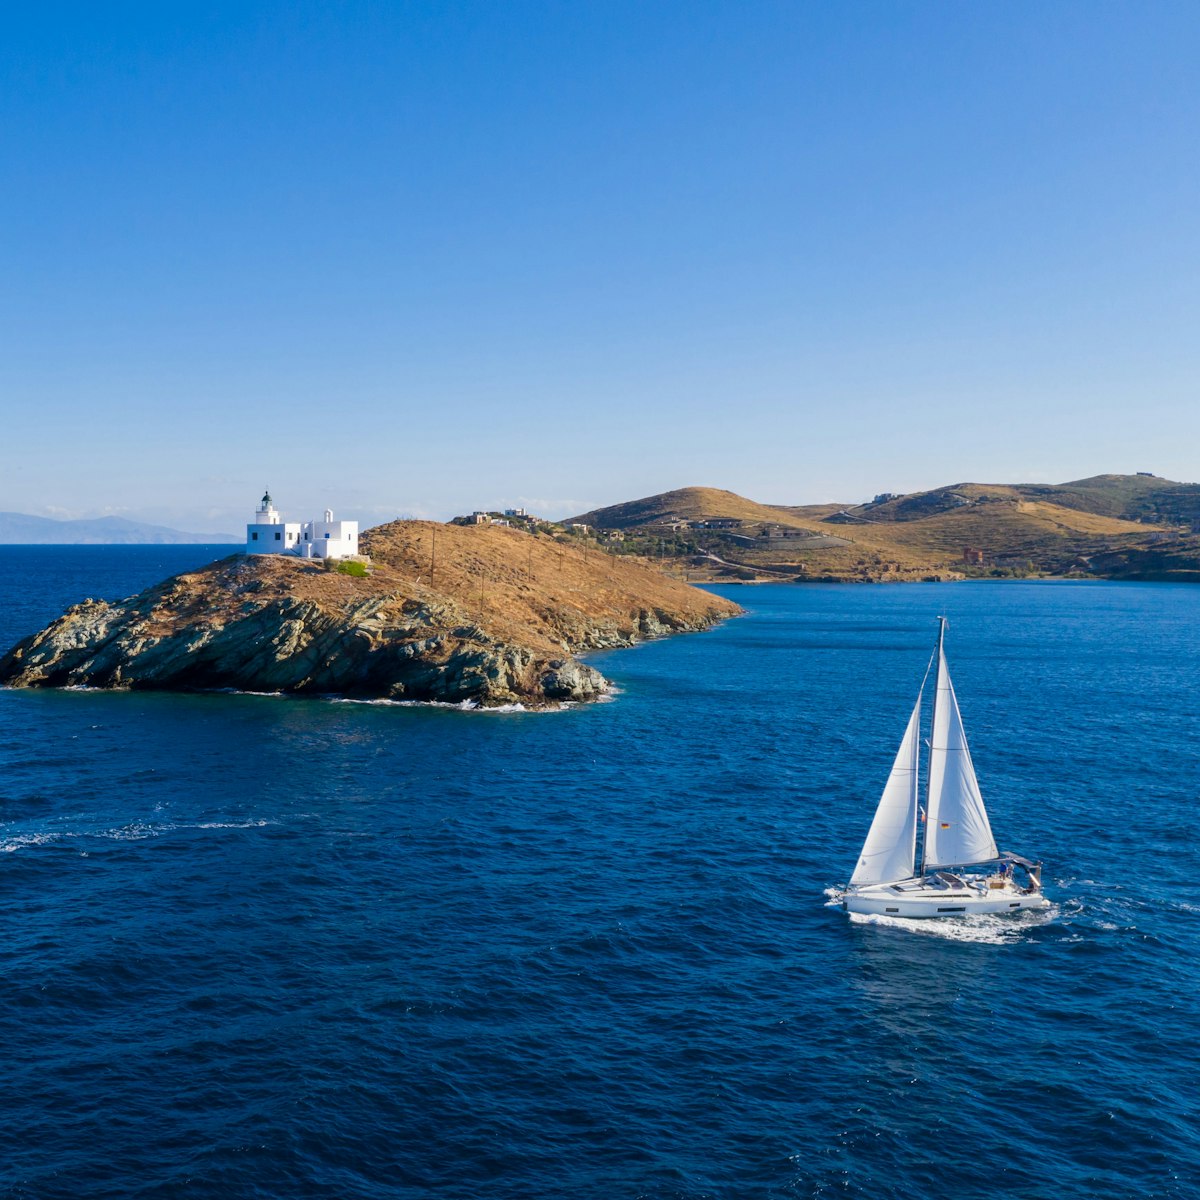 Leiskitės į nuotykius ir atraskite nepakartojamo grožio įspūdingiausias Egėjo ir Jonijos jūrose esančias salas.